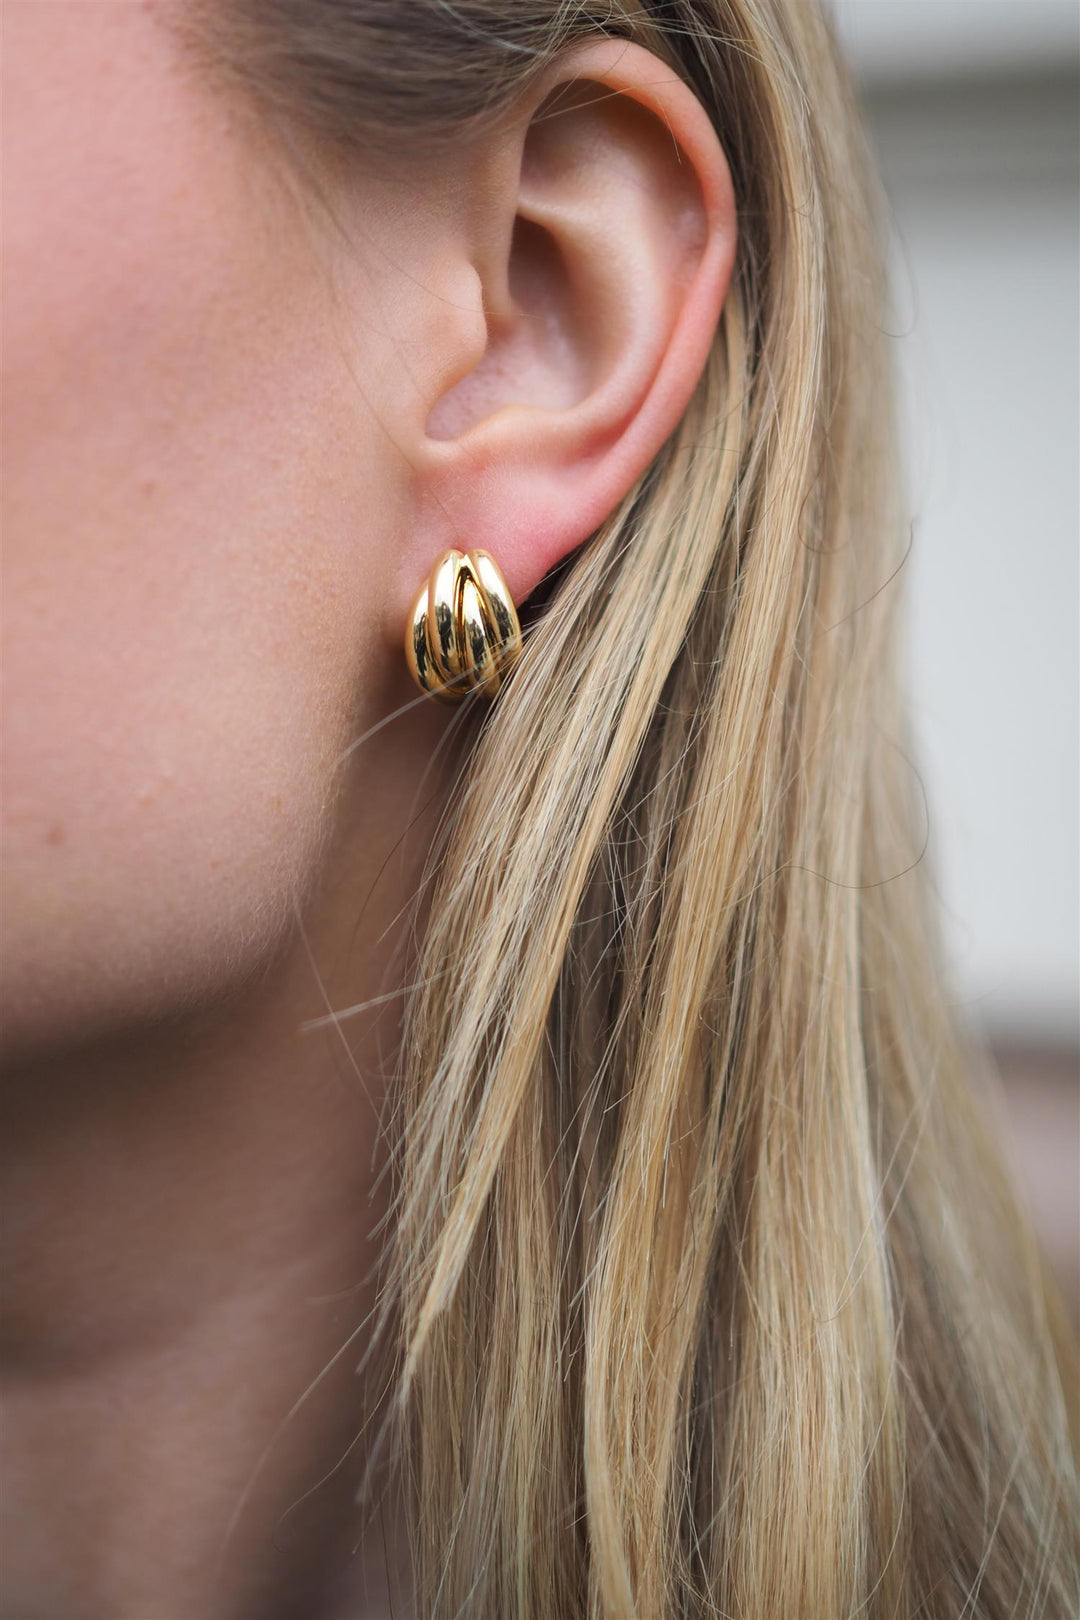 Anine Bing - Knot Earrings